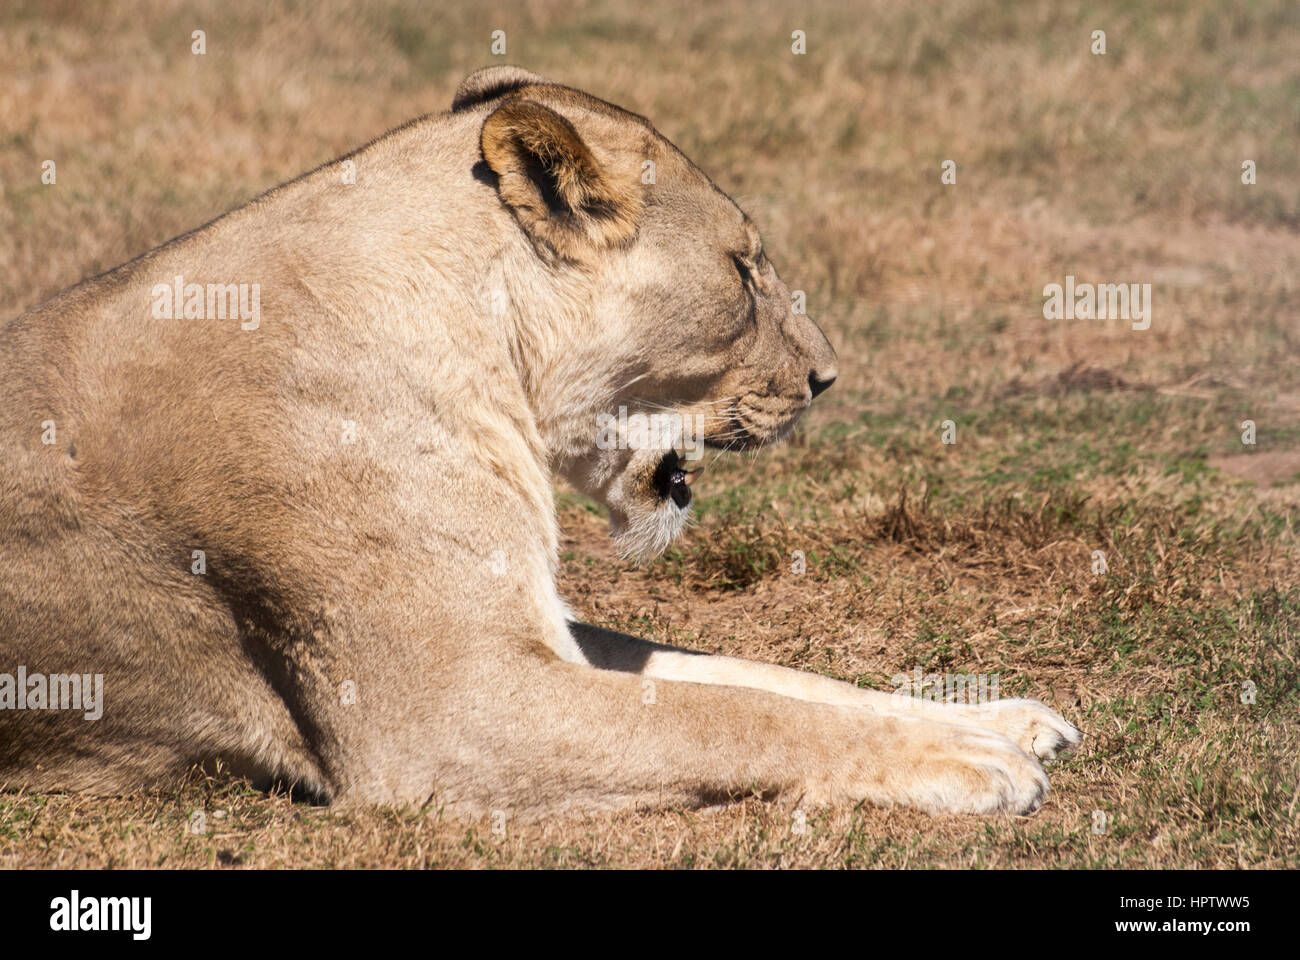 Une lionne bâille après son réveil dans une réserve en Afrique du Sud Banque D'Images